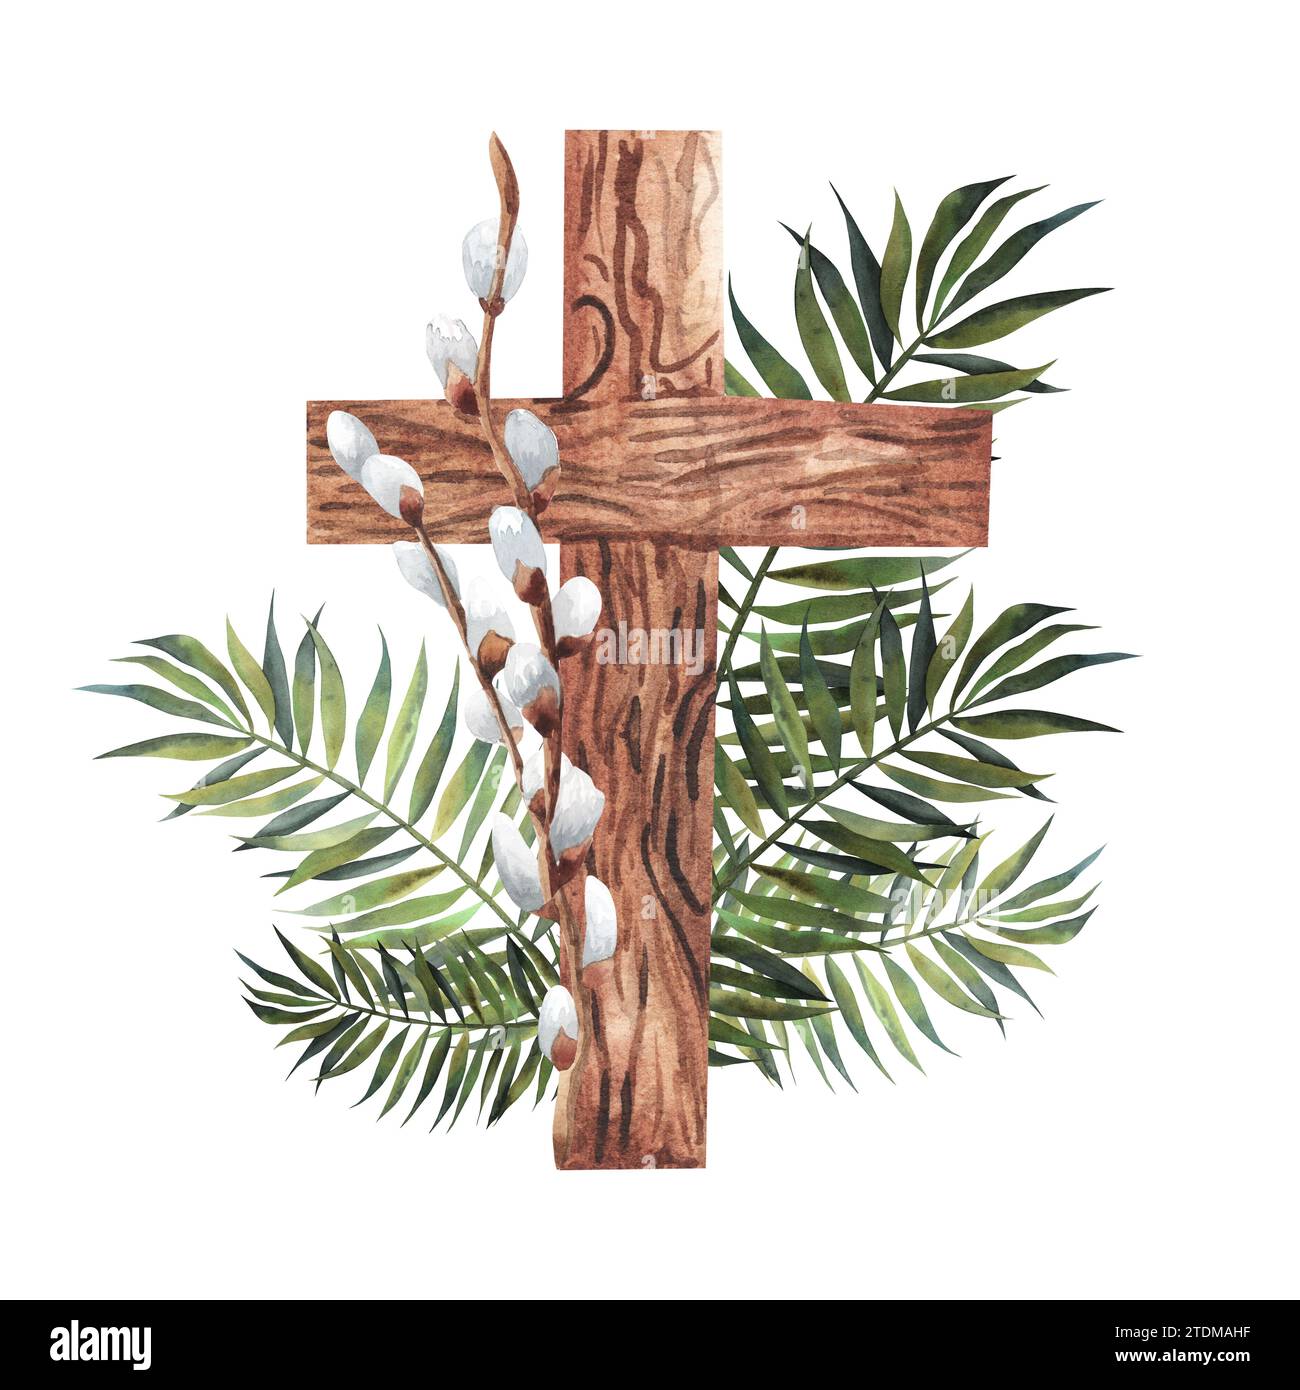 Croix de Pâques avec des catkins sur fond en bois, résumé du concept religieux du dimanche des palmiers. Composition de brindilles de saule et de feuilles de palmier. Pour la conception. religiou Banque D'Images